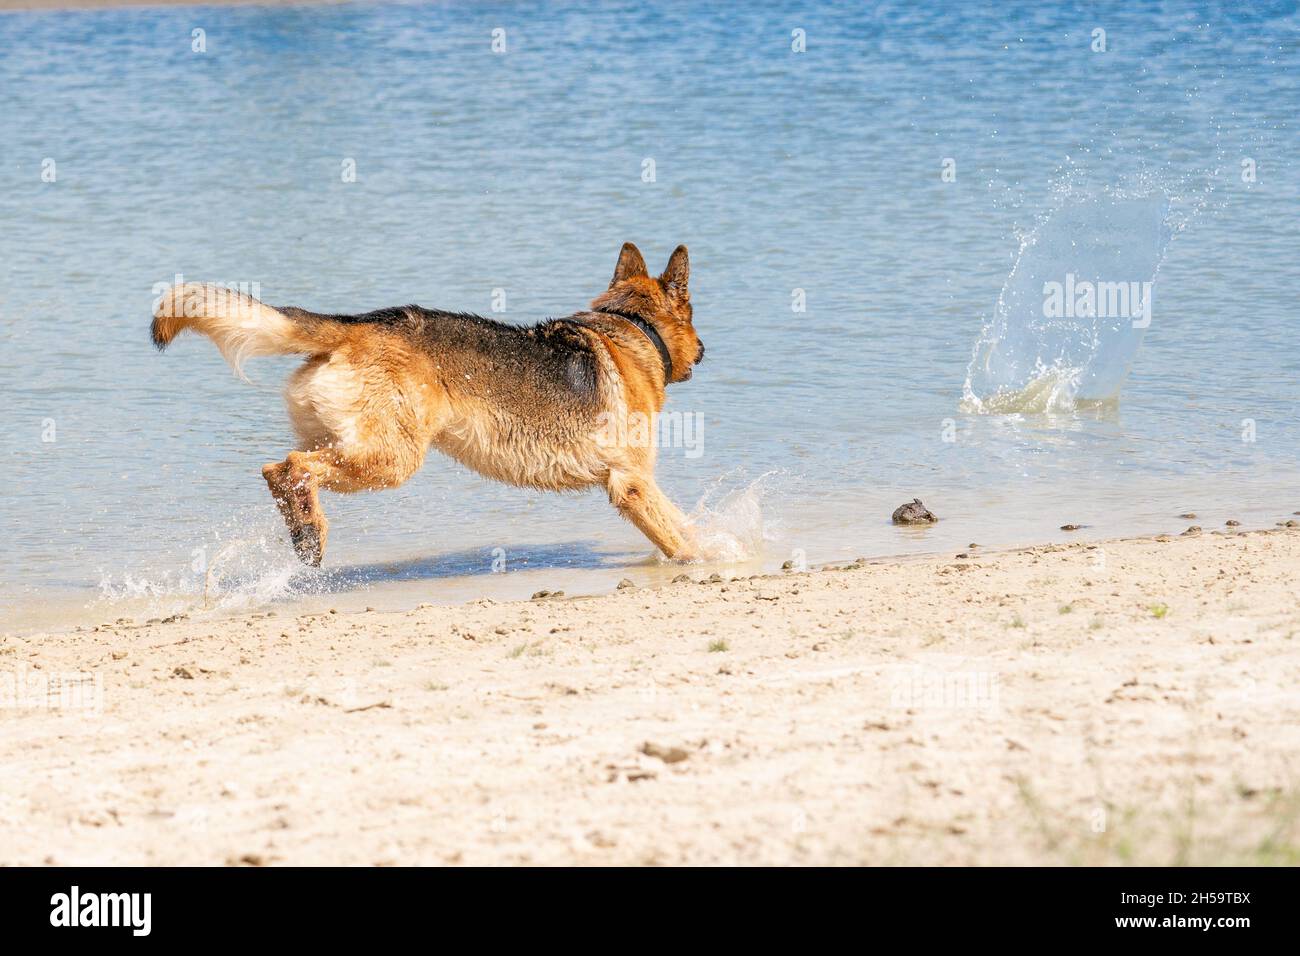 Giovane e felice Pastore tedesco, giocando in acqua. Il cane schizza e salta felicemente nel lago. Foto Stock